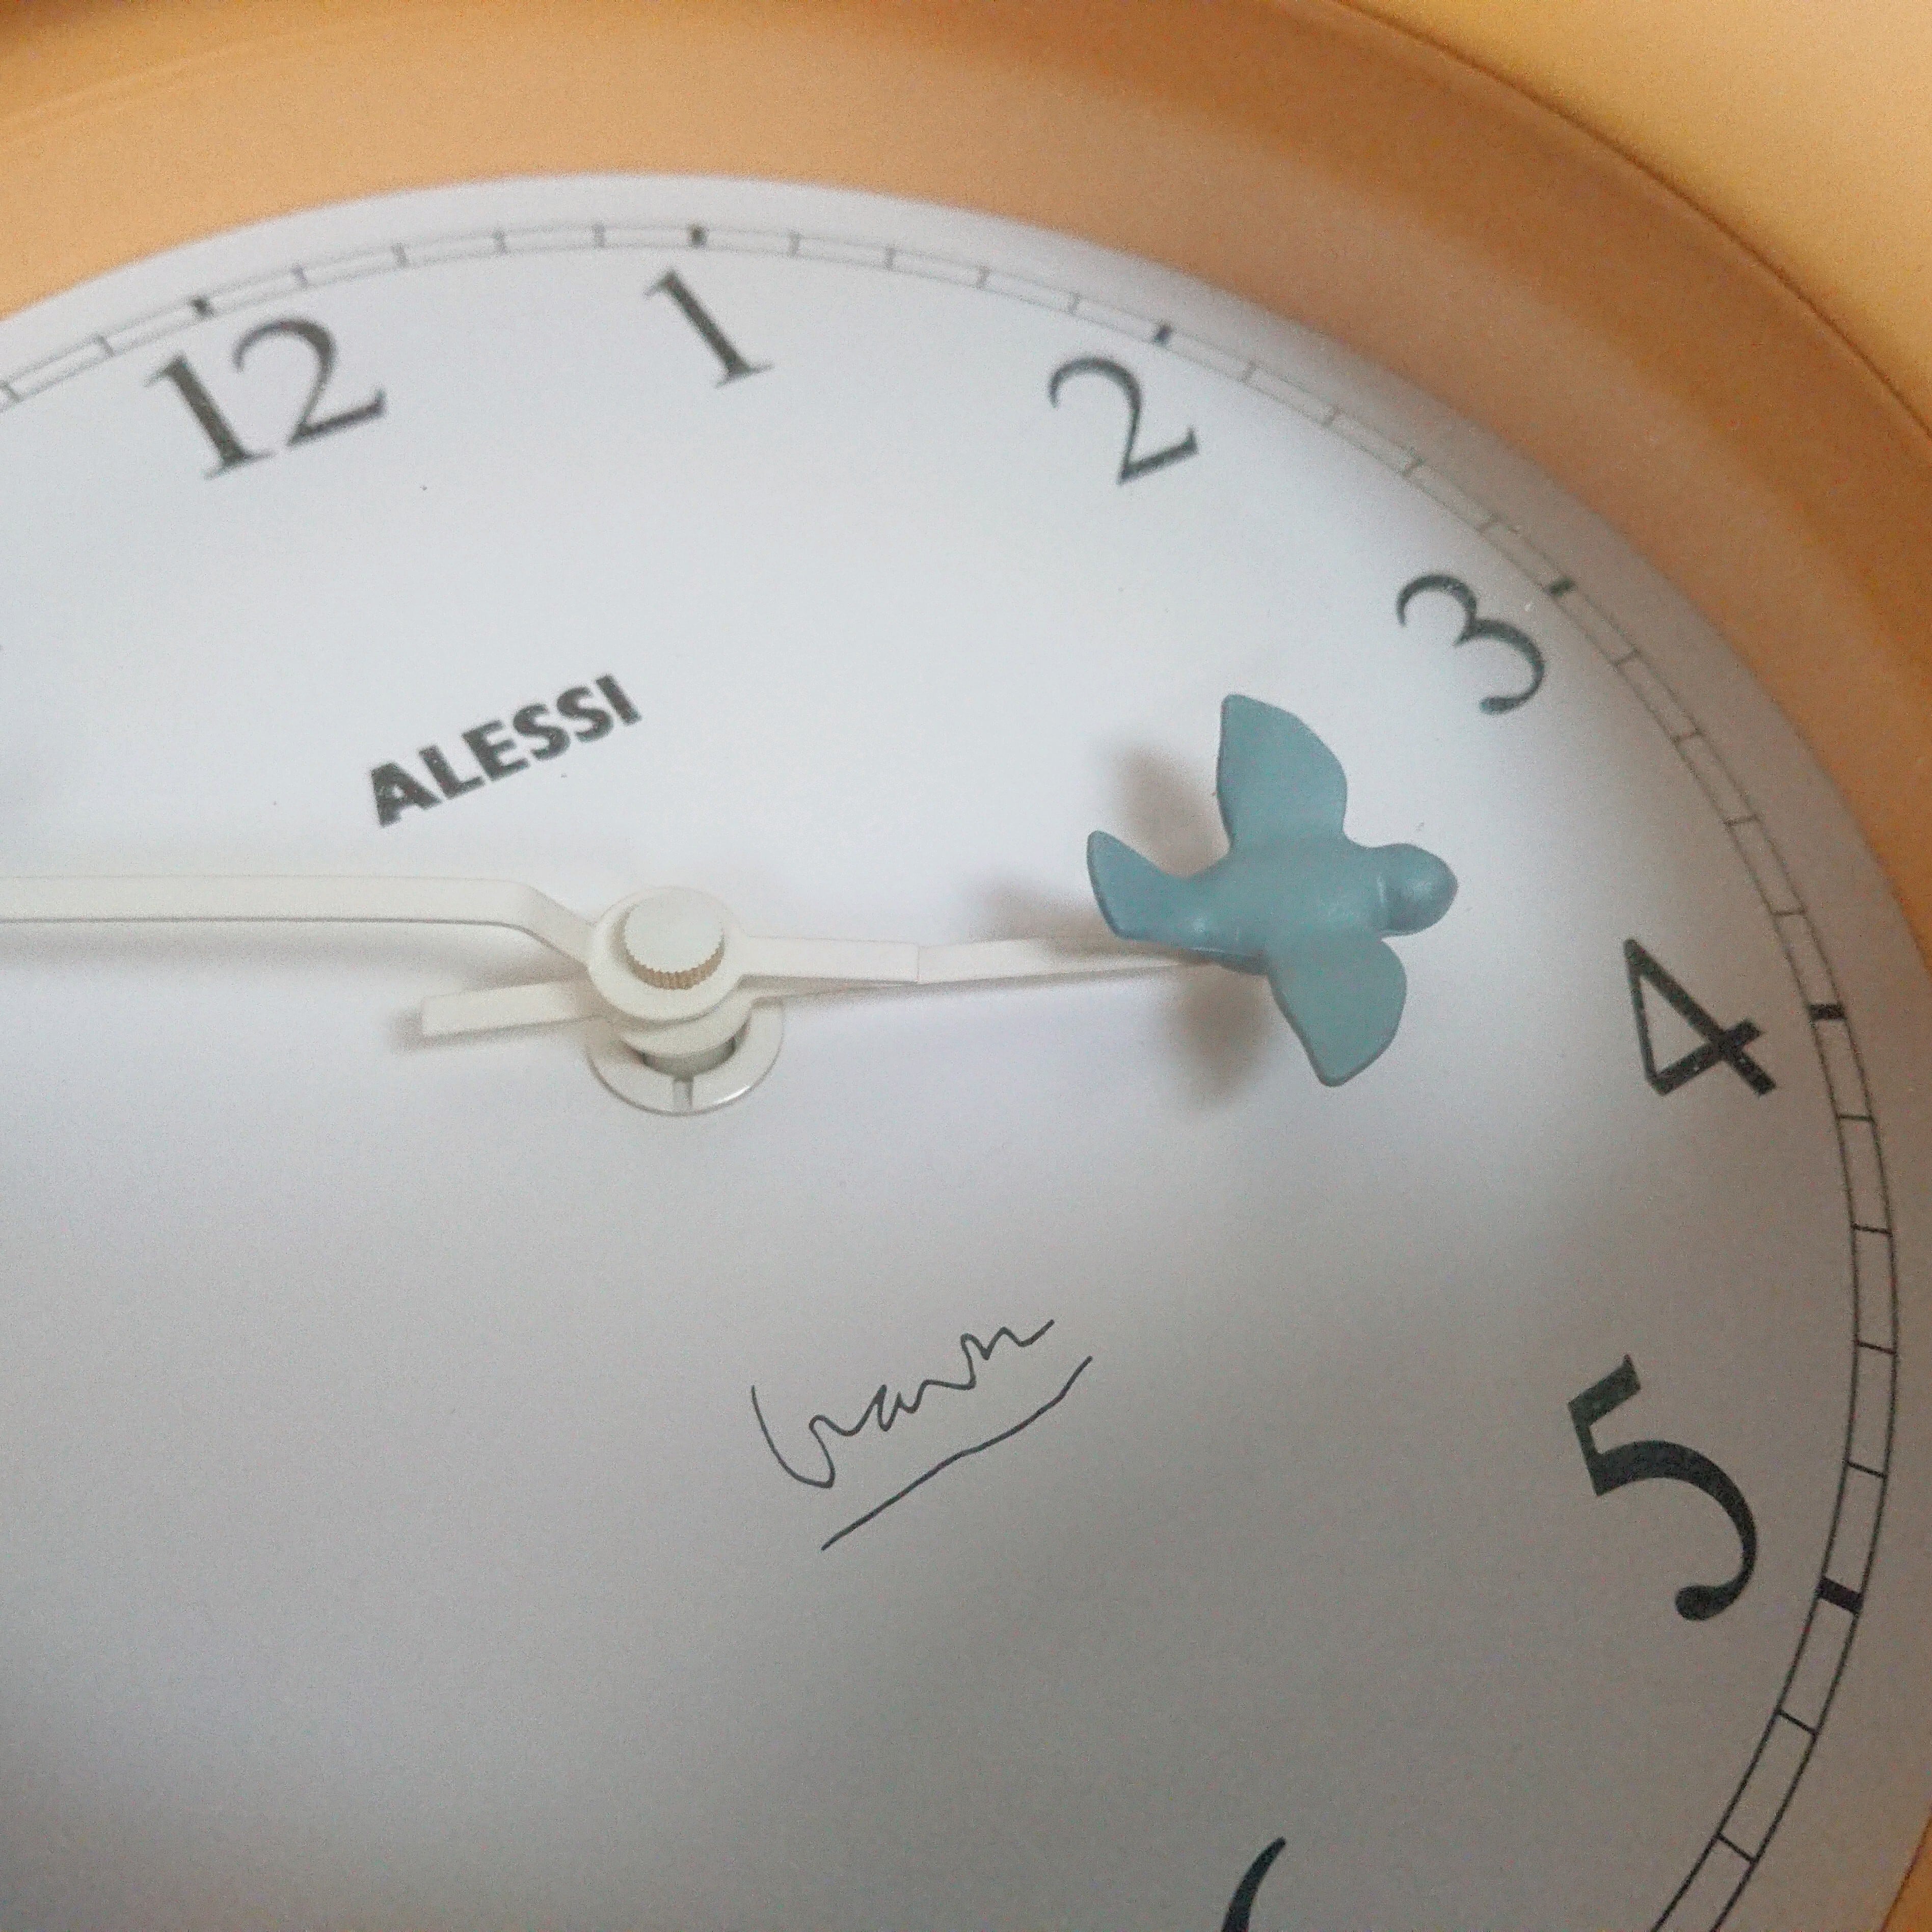 ALESSI Kitchen clock 10AZ アレッシィ キッチンクロック 壁掛け時計